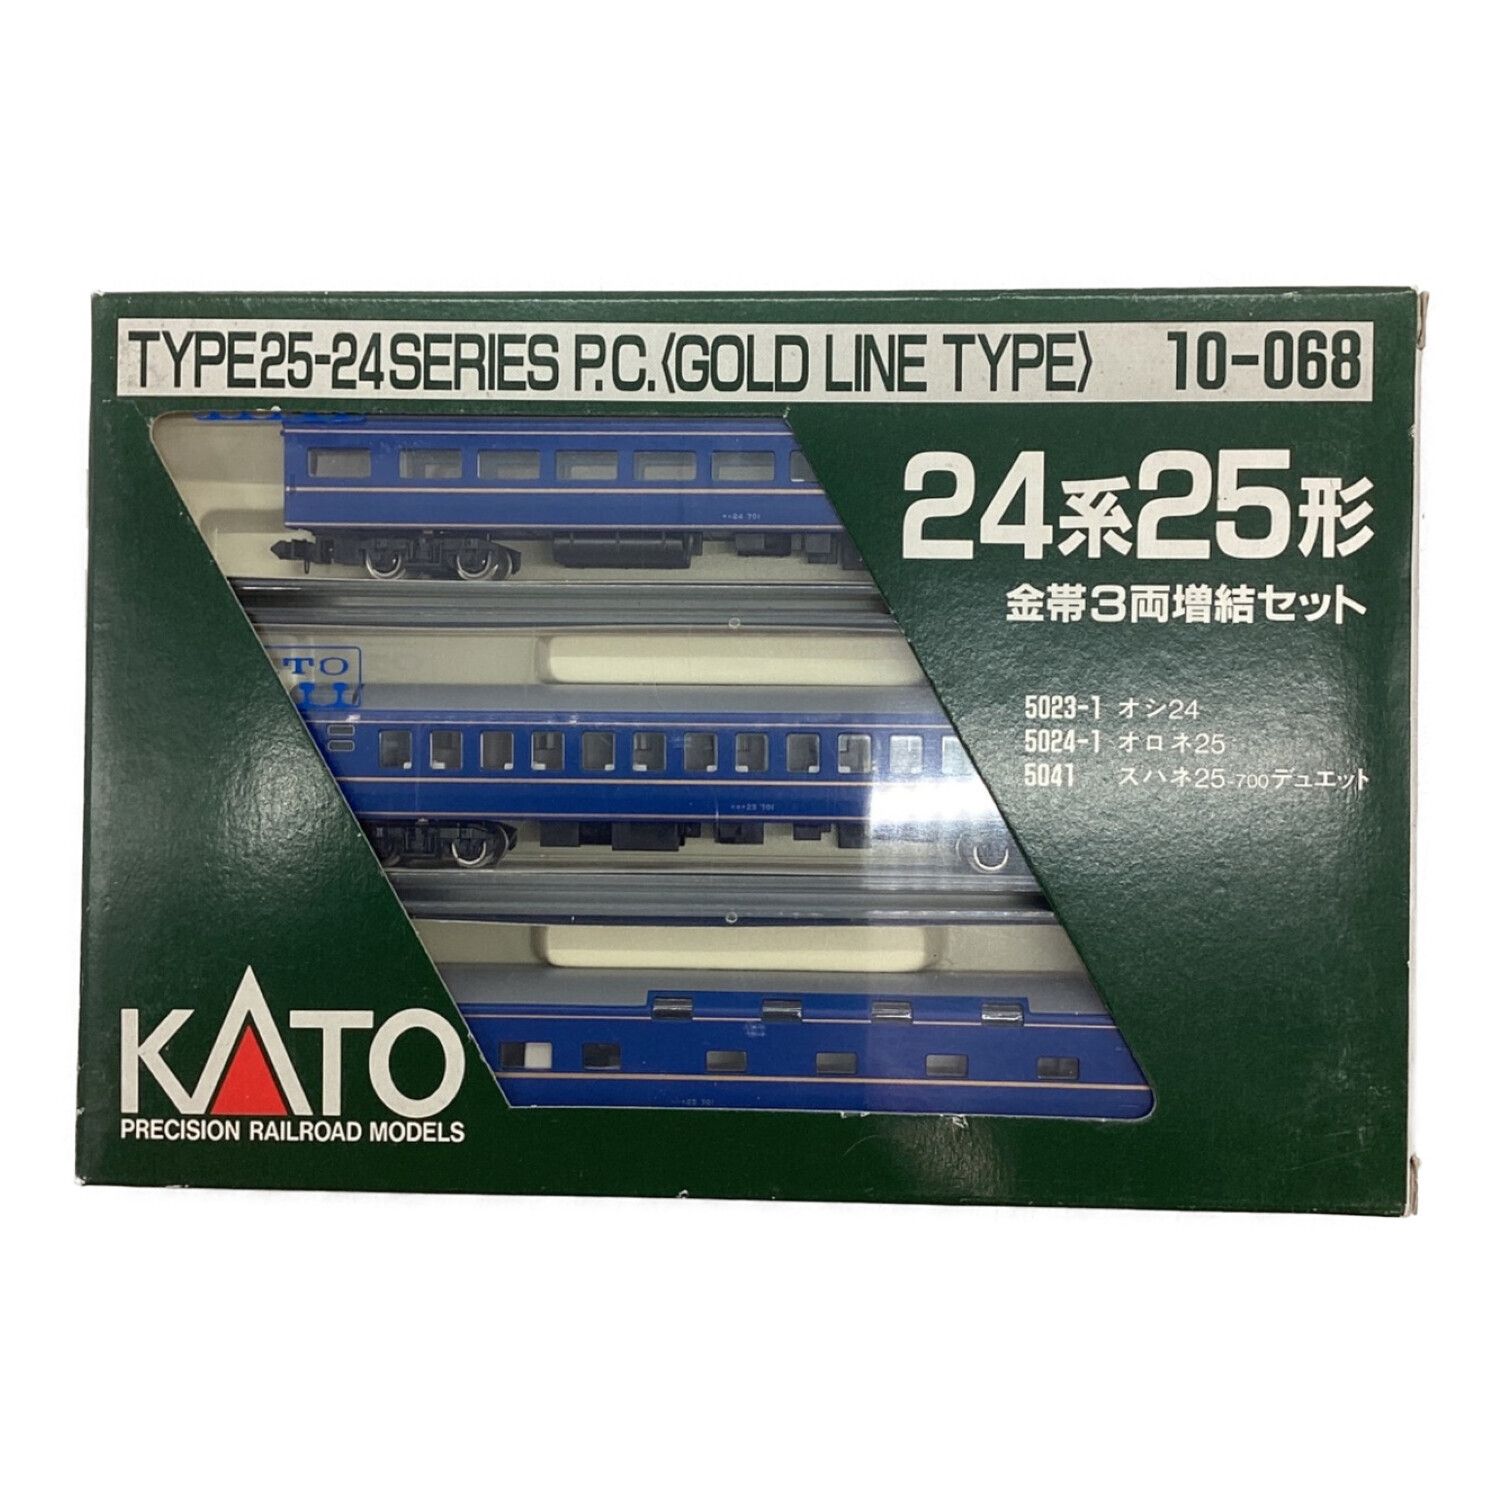 さようなら特急「あさかぜ」10両セットAB Nゲージ KATO - 鉄道模型